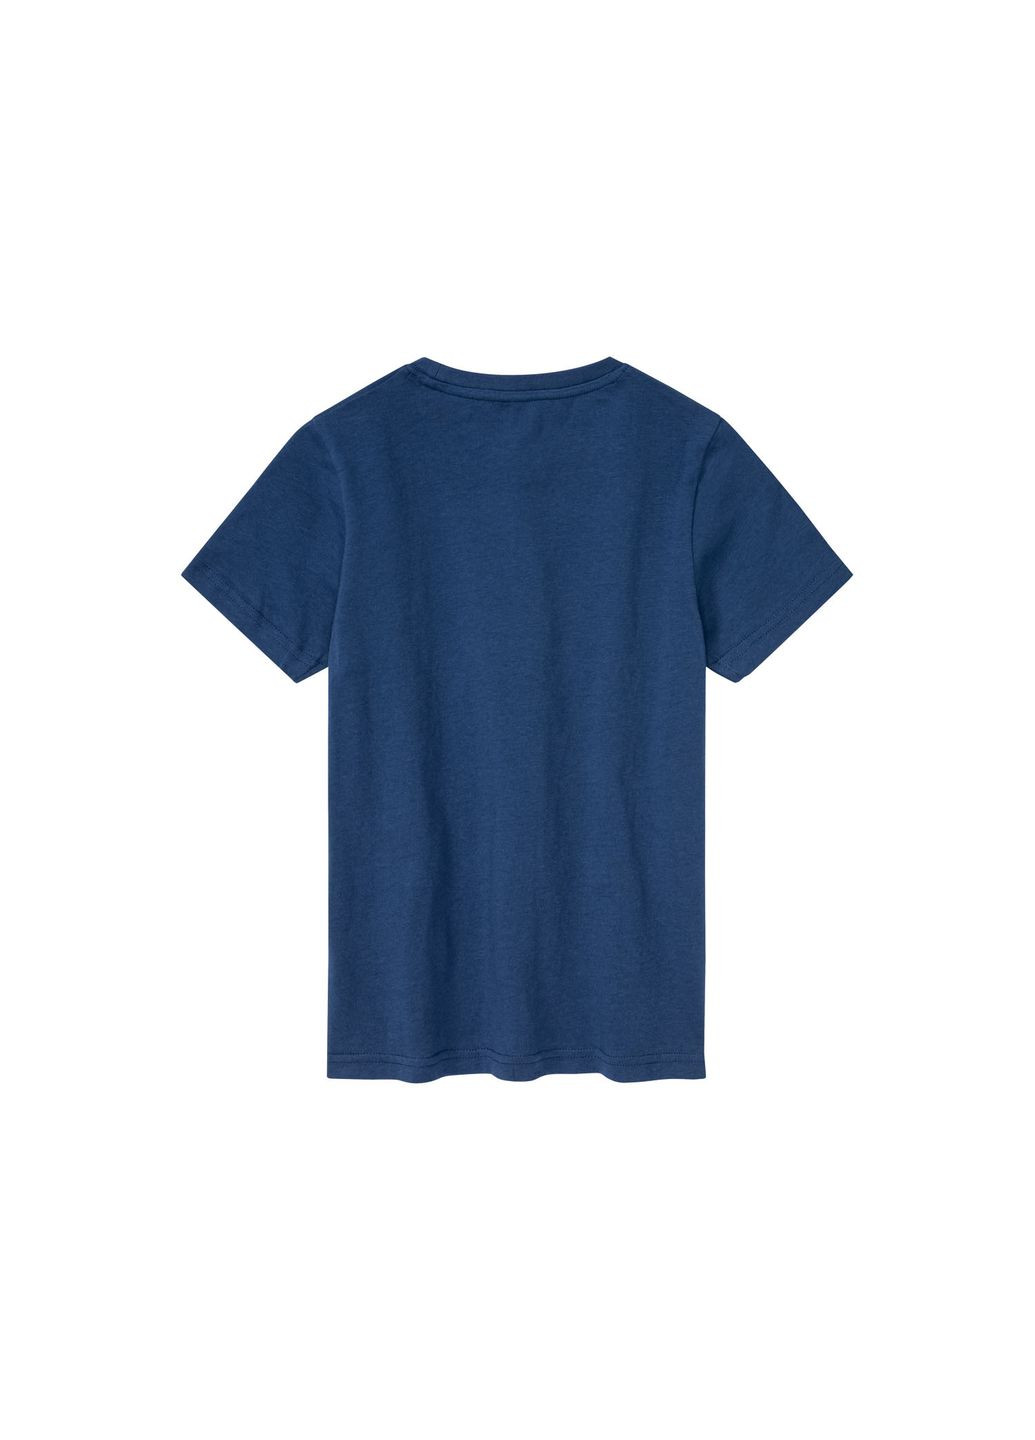 Темно-синя демісезонна футболка бавовняна для хлопчика 371400 темно-синій Pepperts